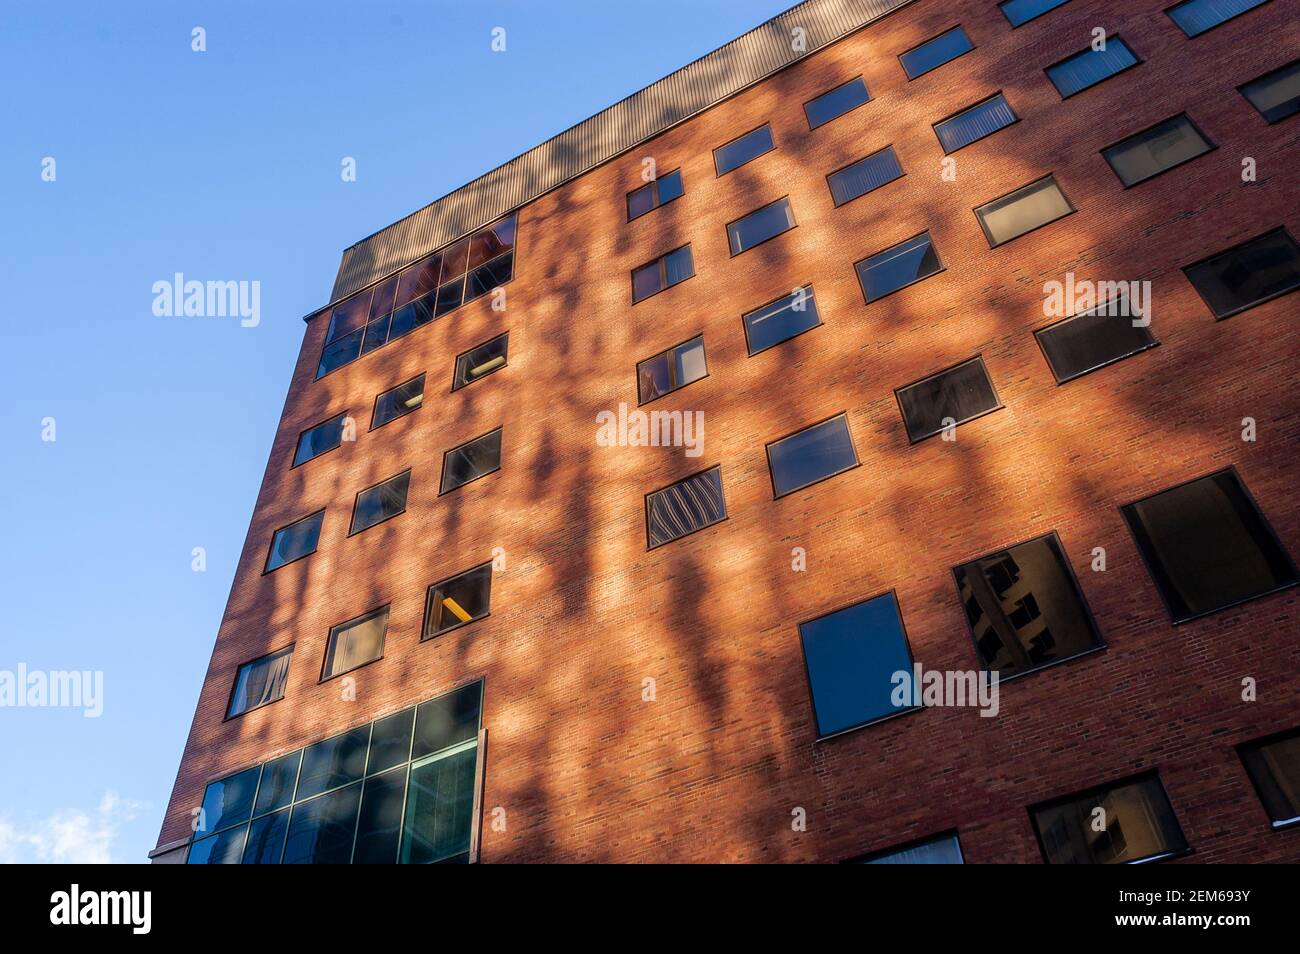 Detalles arquitectónicos de la fachada del edificio con interesante luz. Foto de stock